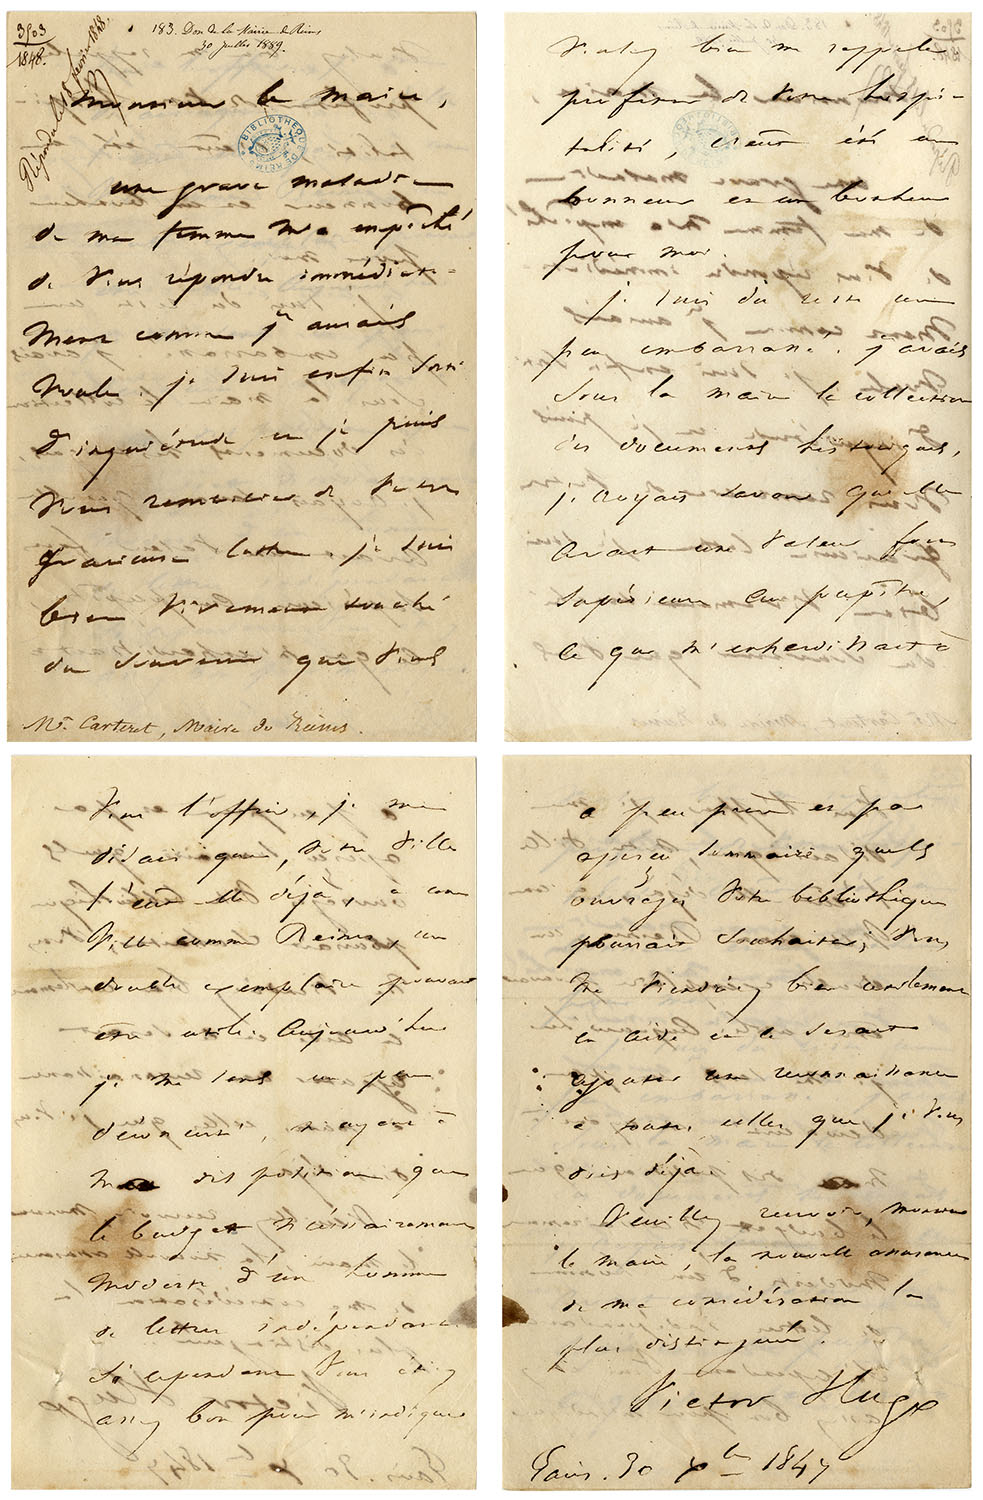 Lettre du 30 décembre 1847 - Collection d'autographe, fonds Duchêne, Hugo Victor